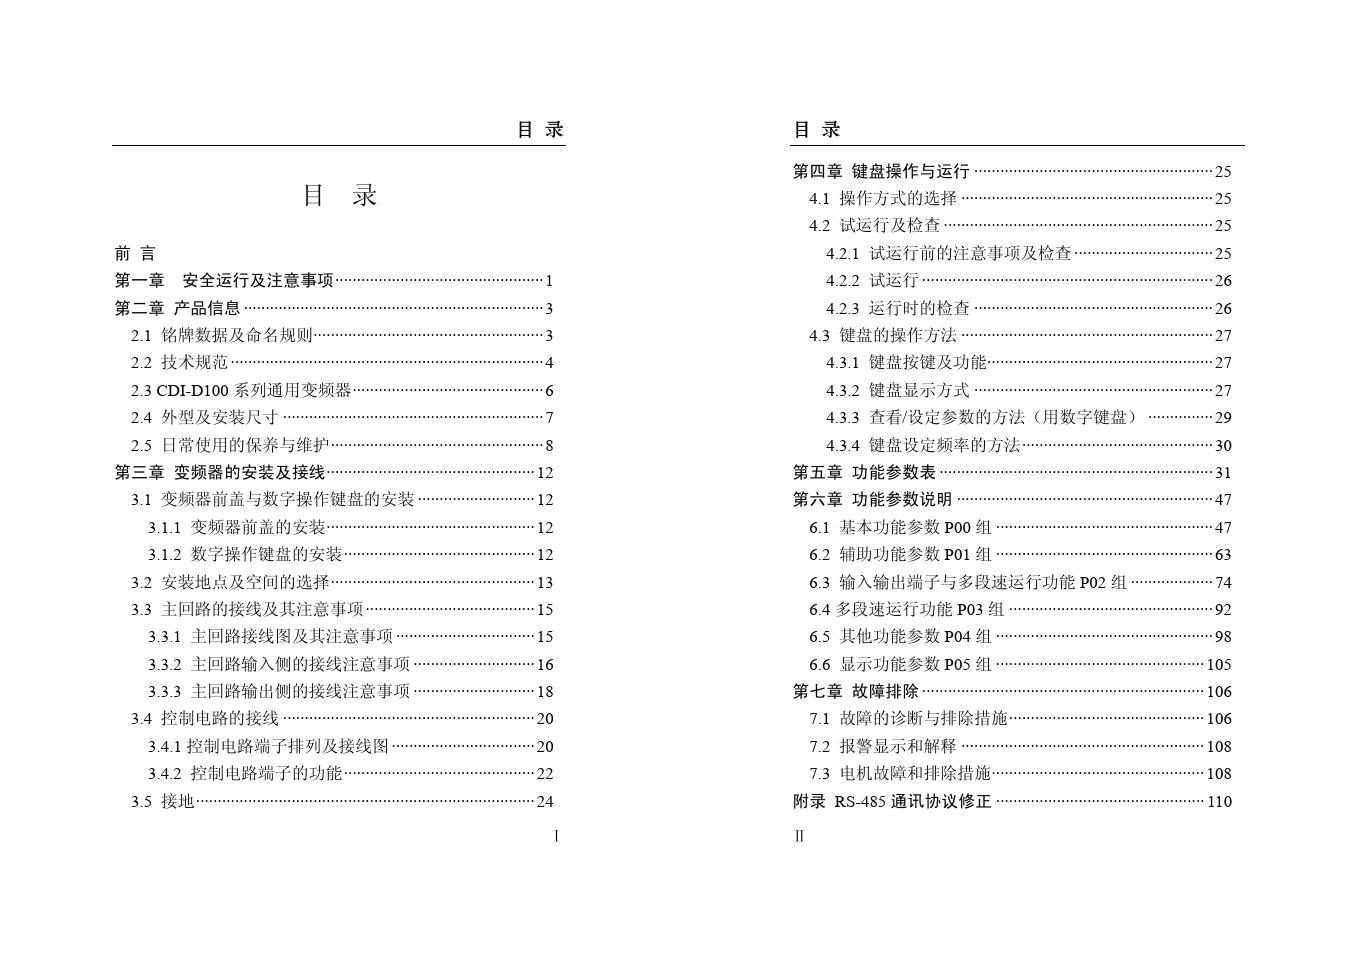 德力西CDI-D100CDI9000系列变频器中文说明书